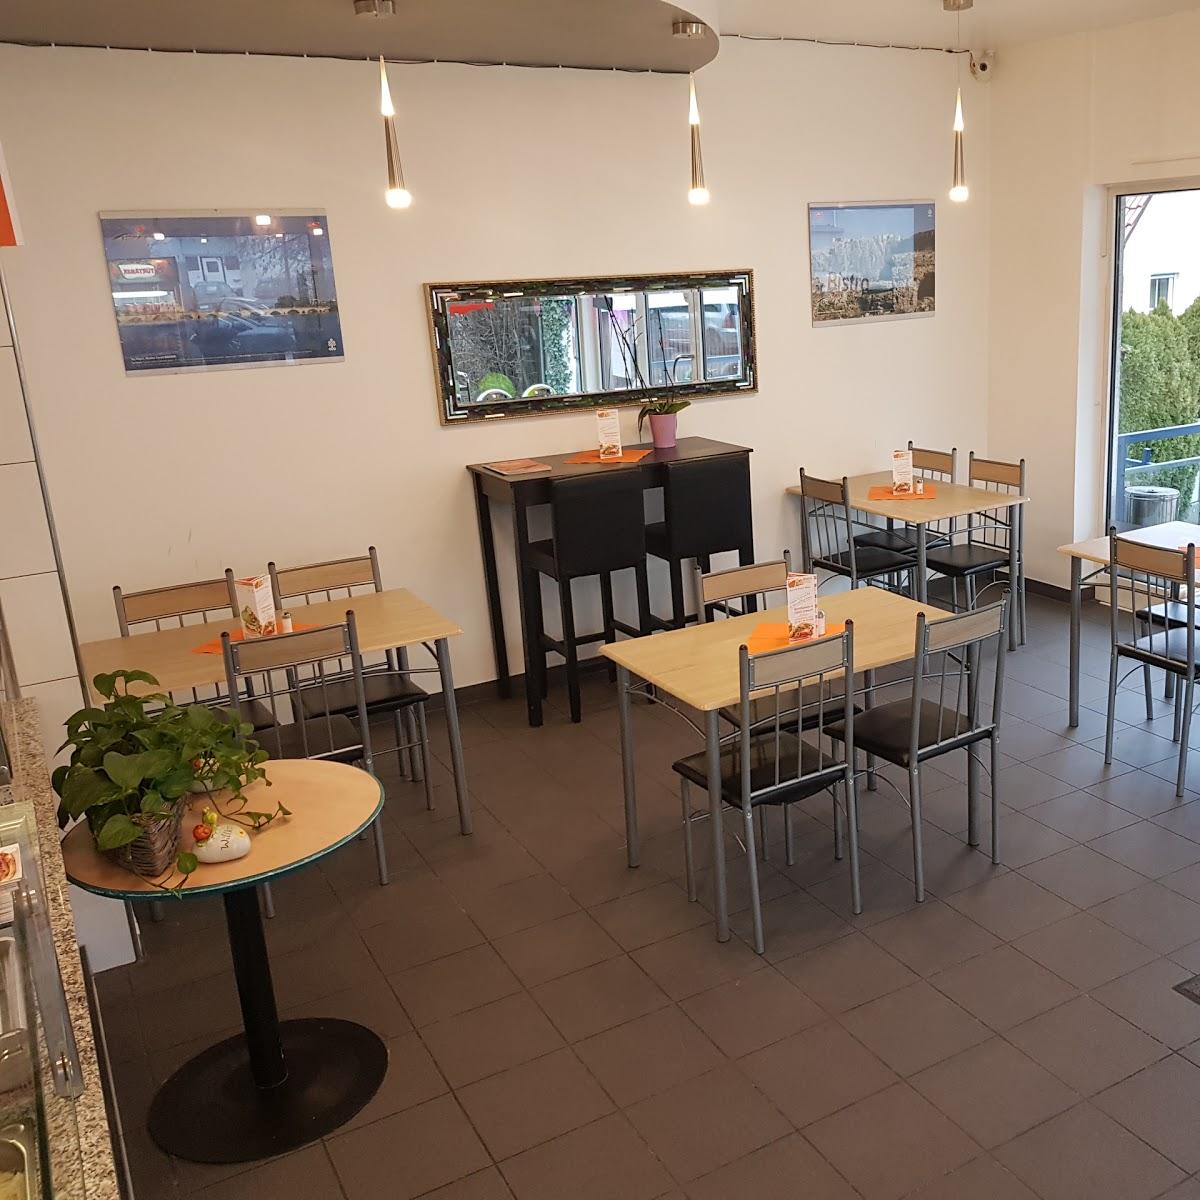 Restaurant "Günther Vogt Molkereiprodukte und Gaststätte Rose" in  Urbach